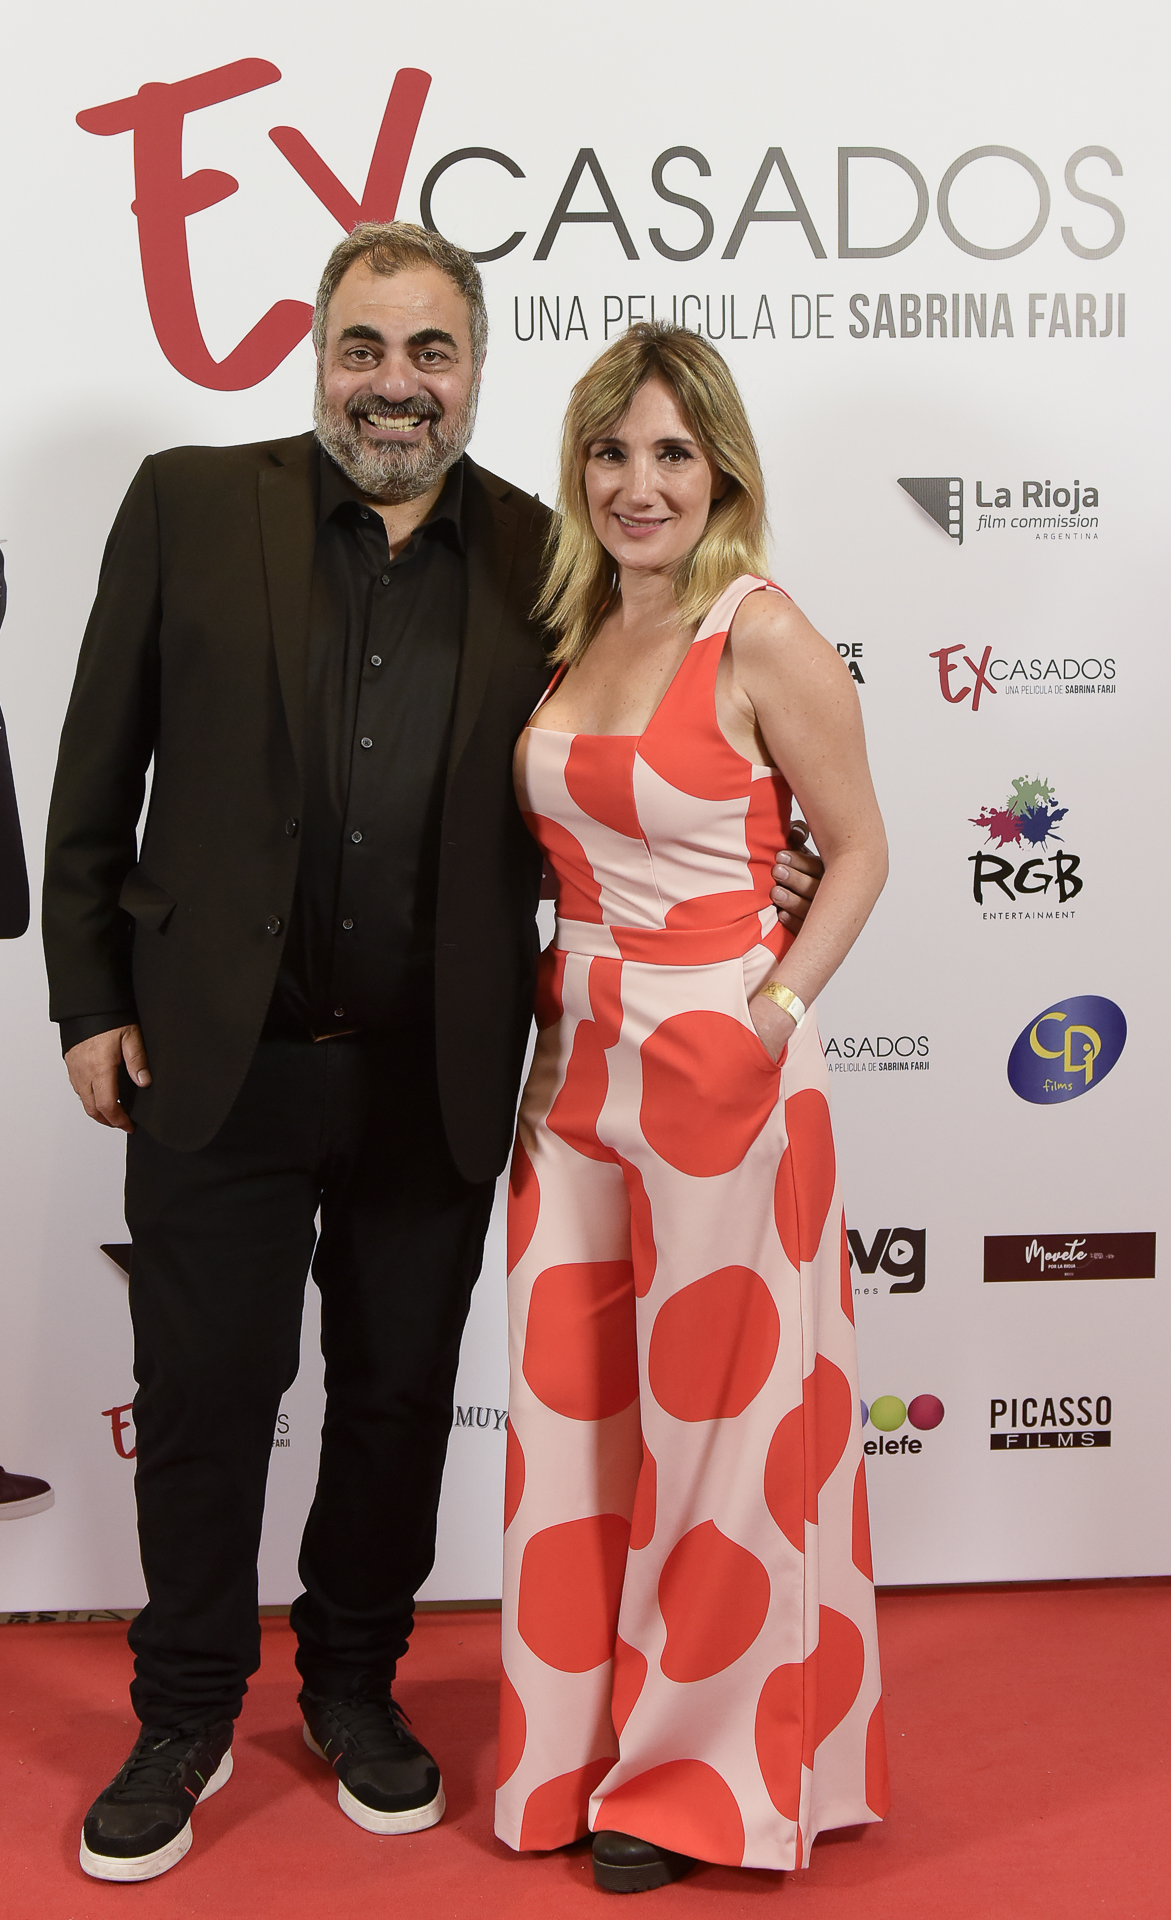 Roberto Moldavsky y Jorgelina Aruzzi en el avant premiere de "Ex casados", el film donde el humorista debutó como actor